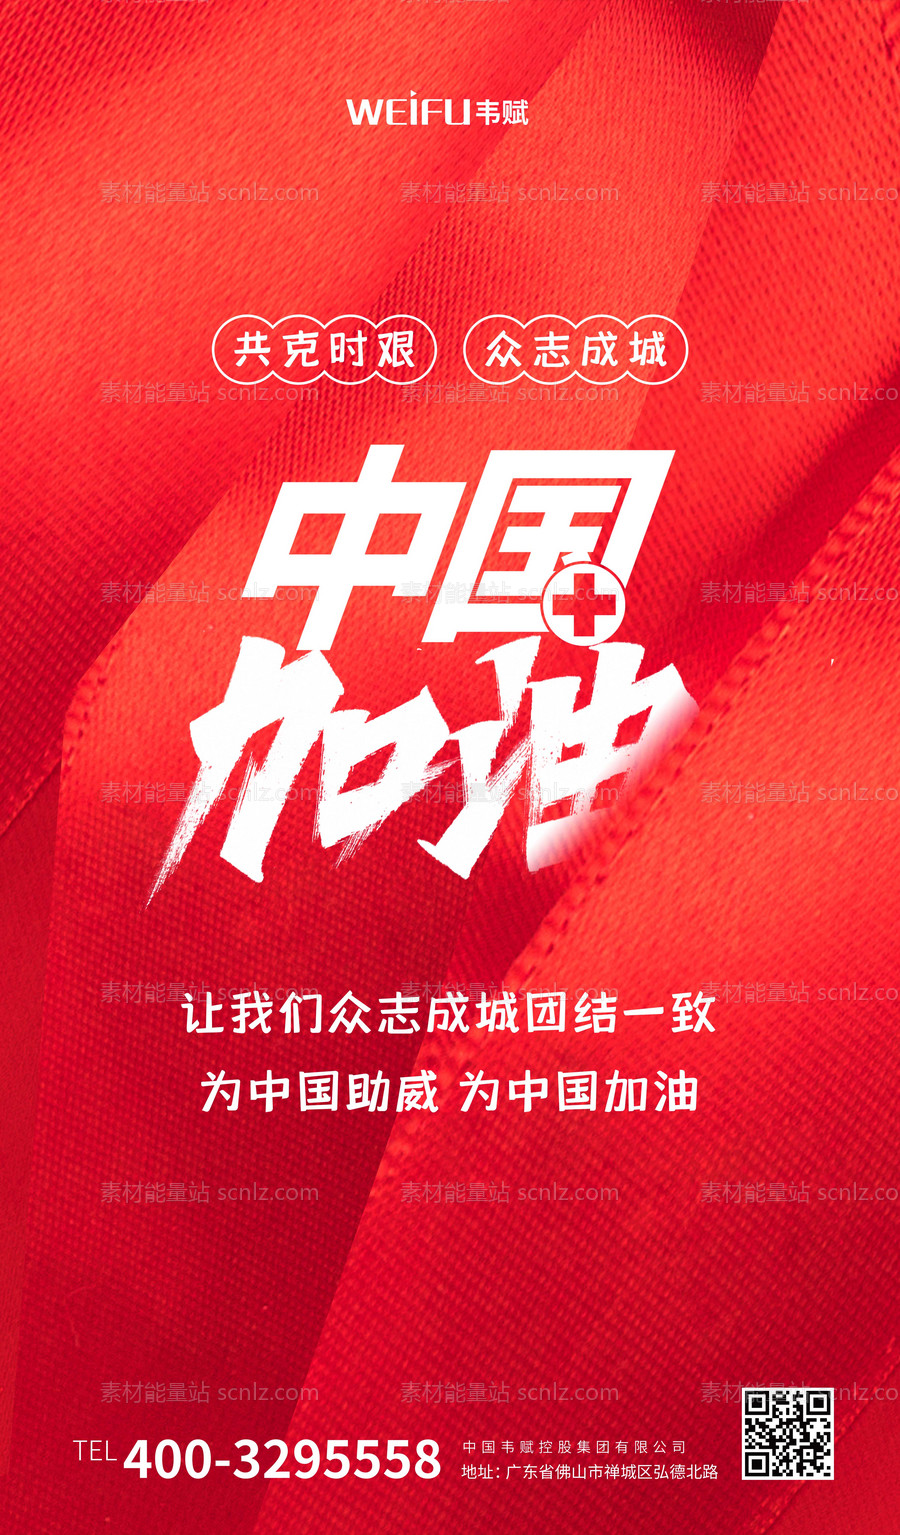 素材能量站-红色简洁中国加油宣传海报